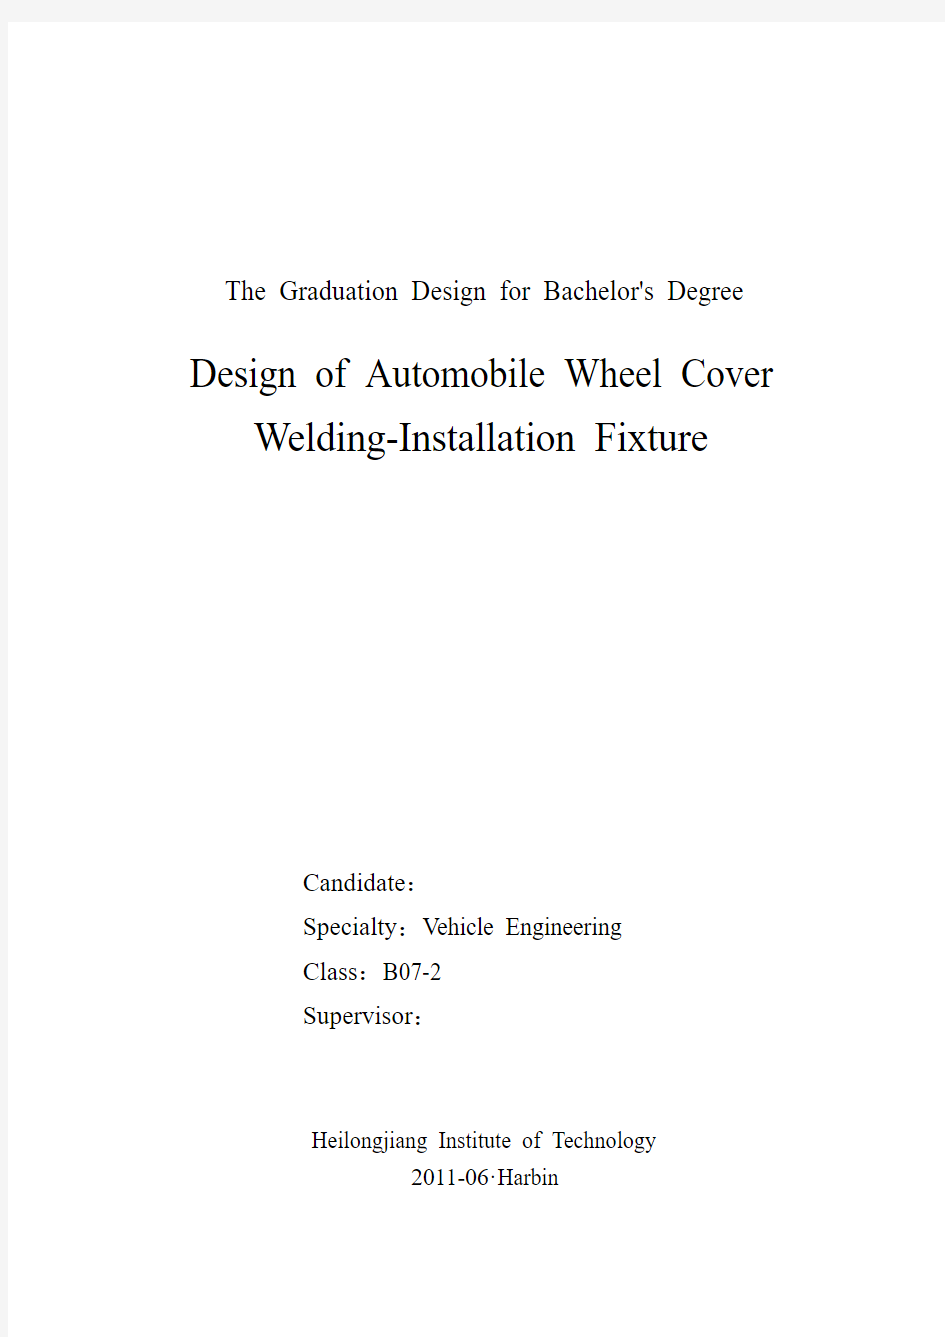 汽车车轮轮罩焊装夹具设计毕业设计论文